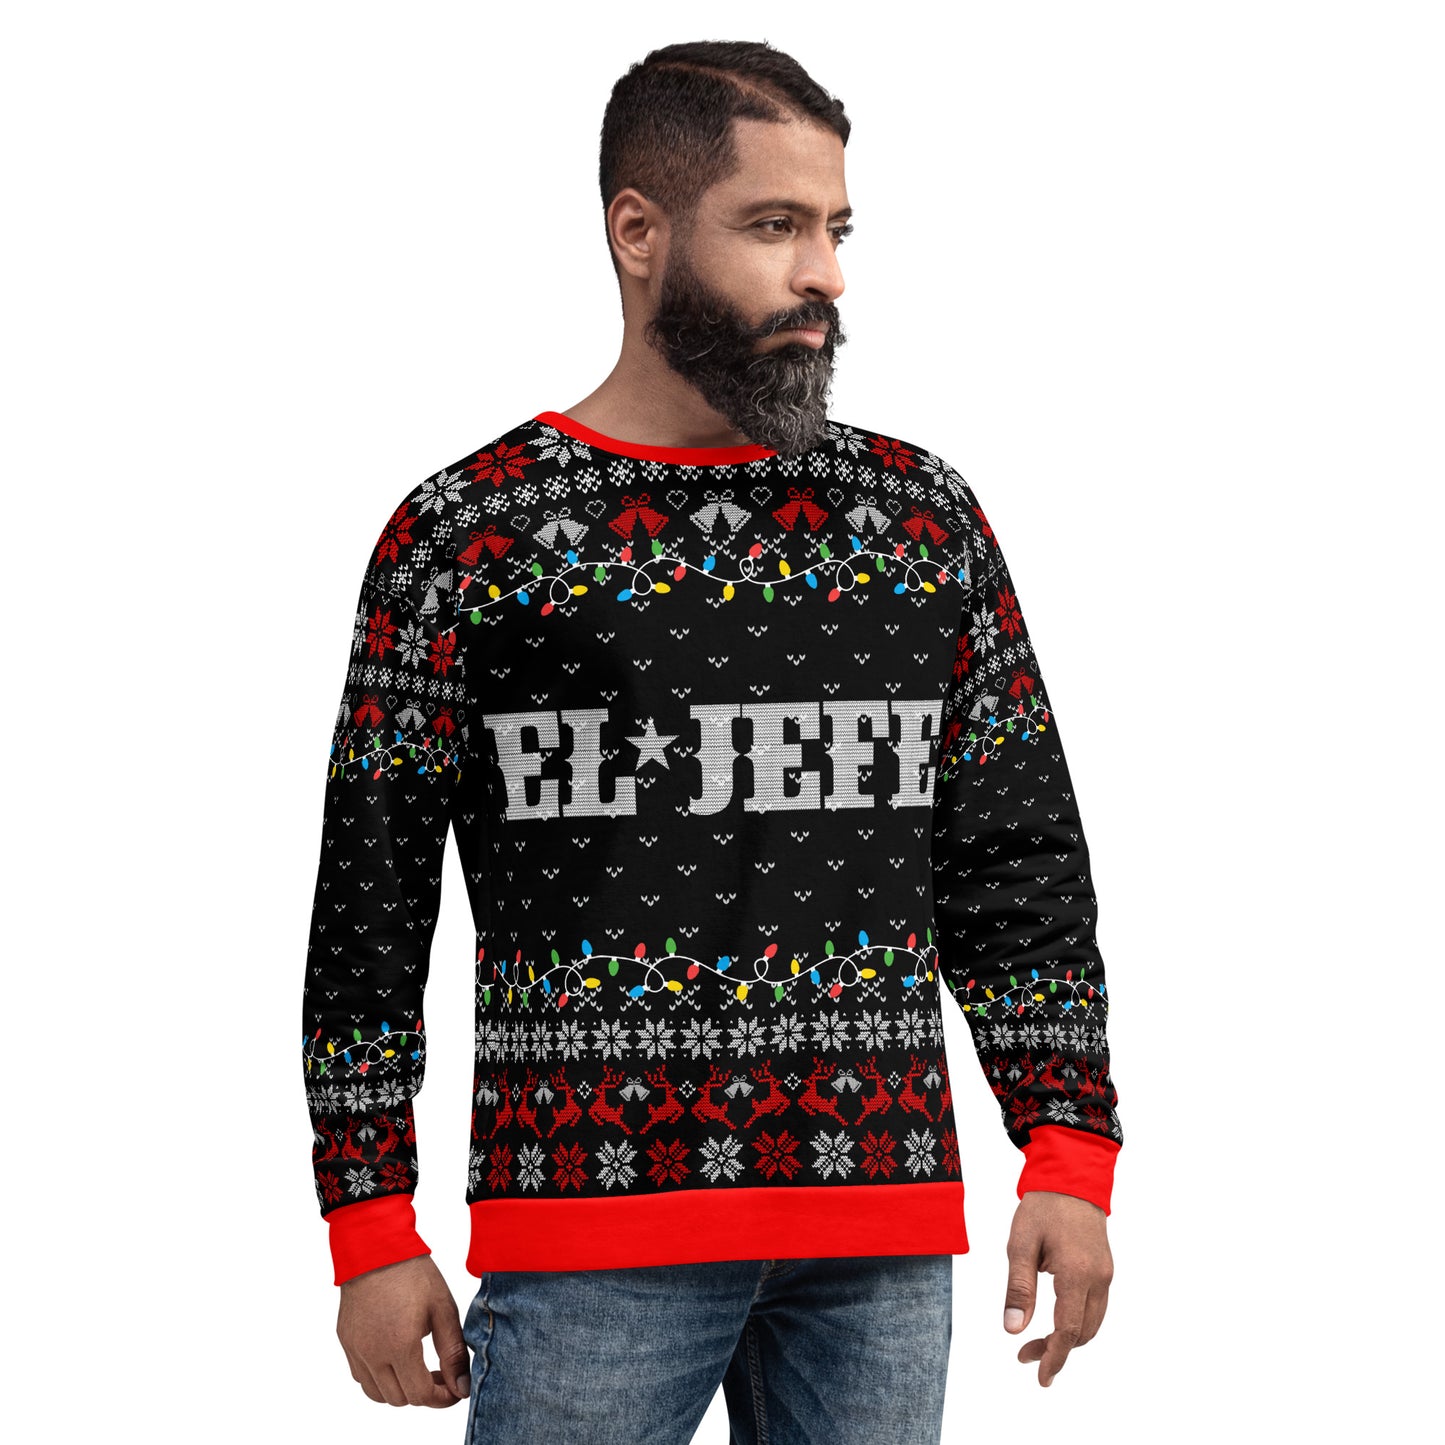 El Jefe Ugly Christmas Sweatshirt